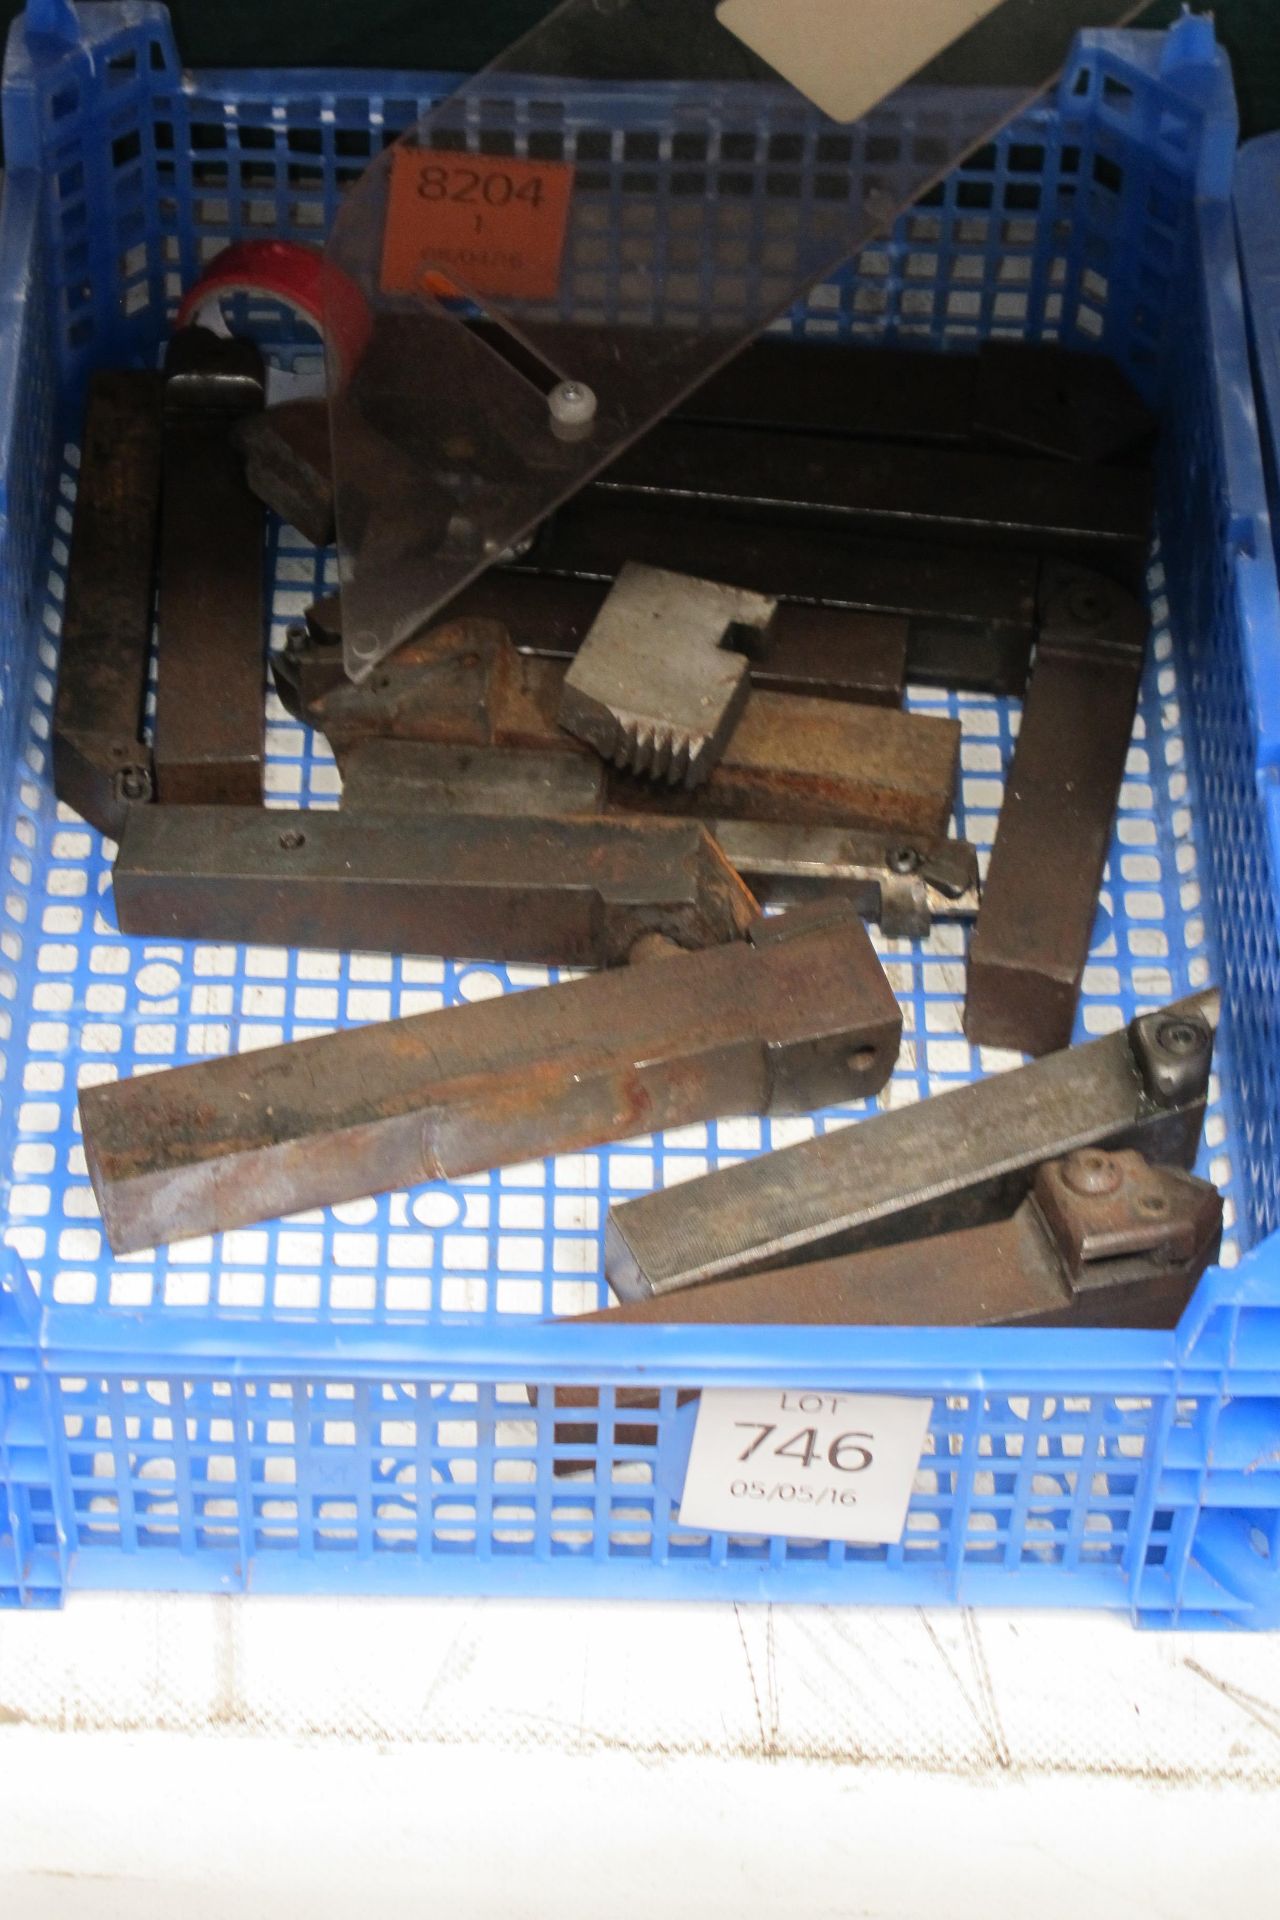 Tray of lathe tools